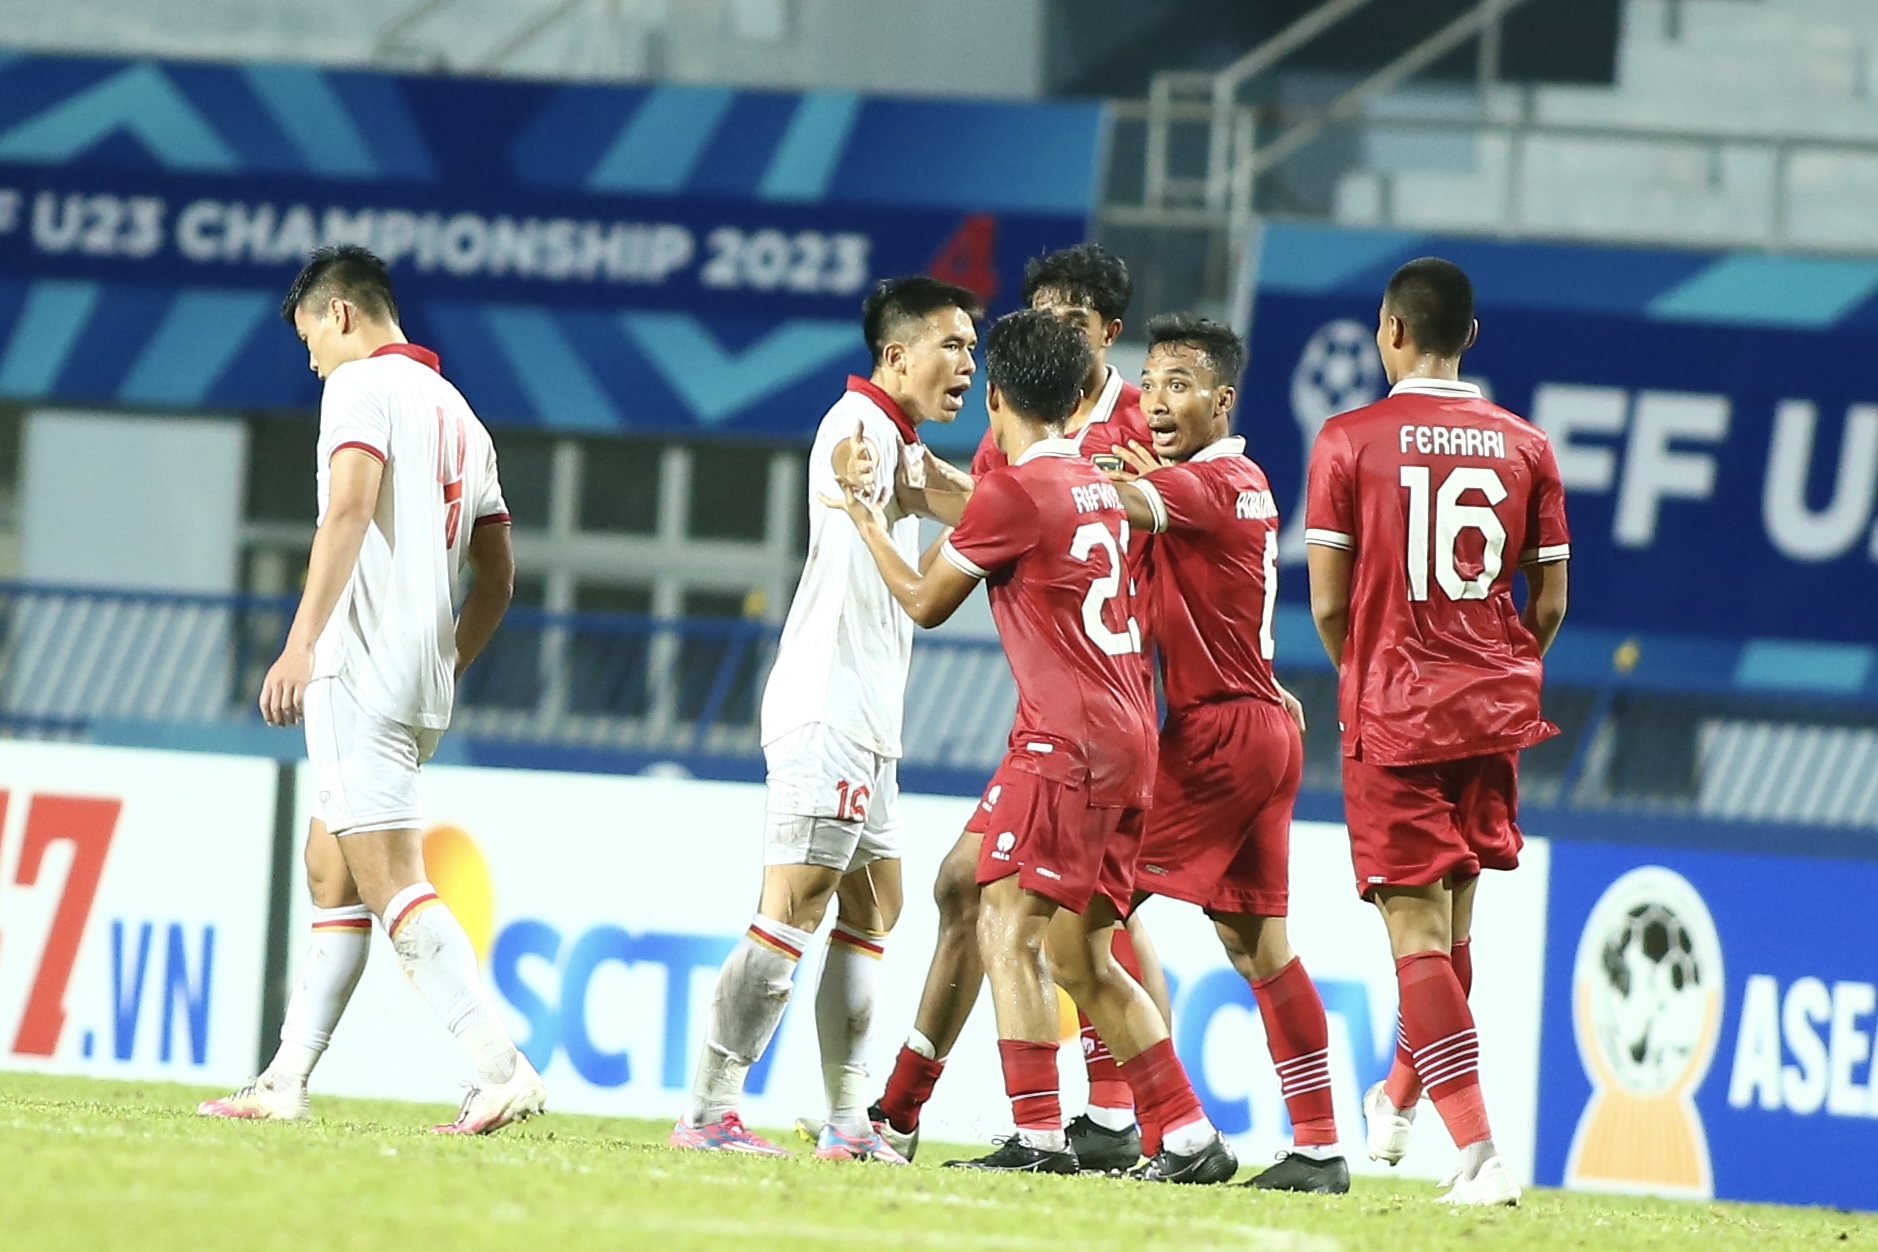 Indonesia được khuyên bỏ các giải của AFF nếu U23 Việt Nam không bị phạt -  Báo Người lao động